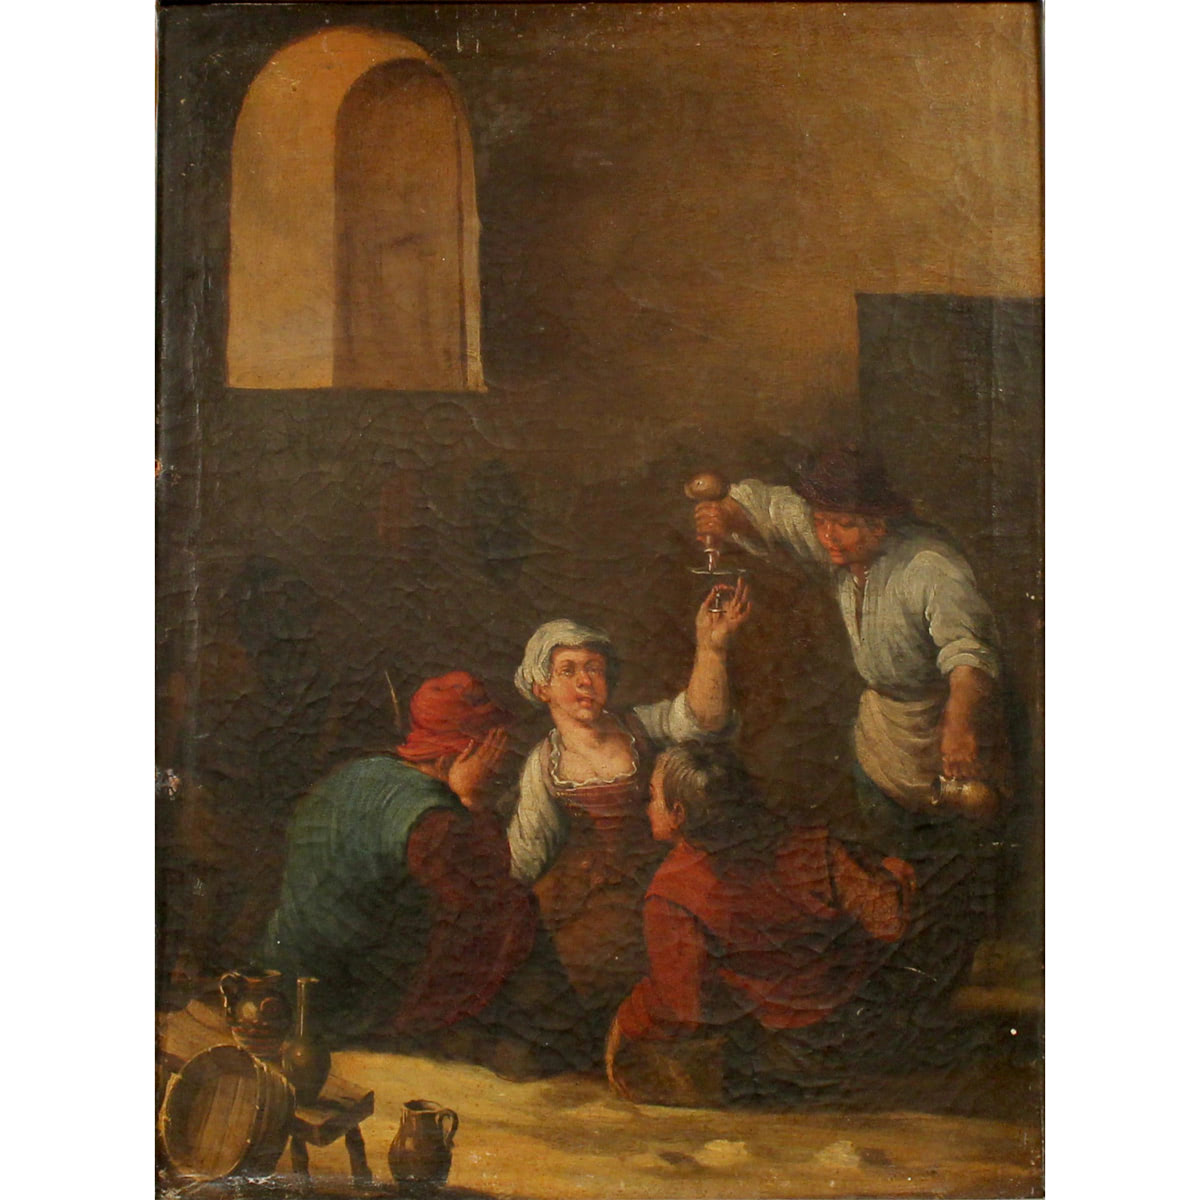 Scuola fiamminga della fine del secolo XVIII "Bevitori all'osteria" - Flemish school of the late eighteenth century "Drinkers at the tavern"